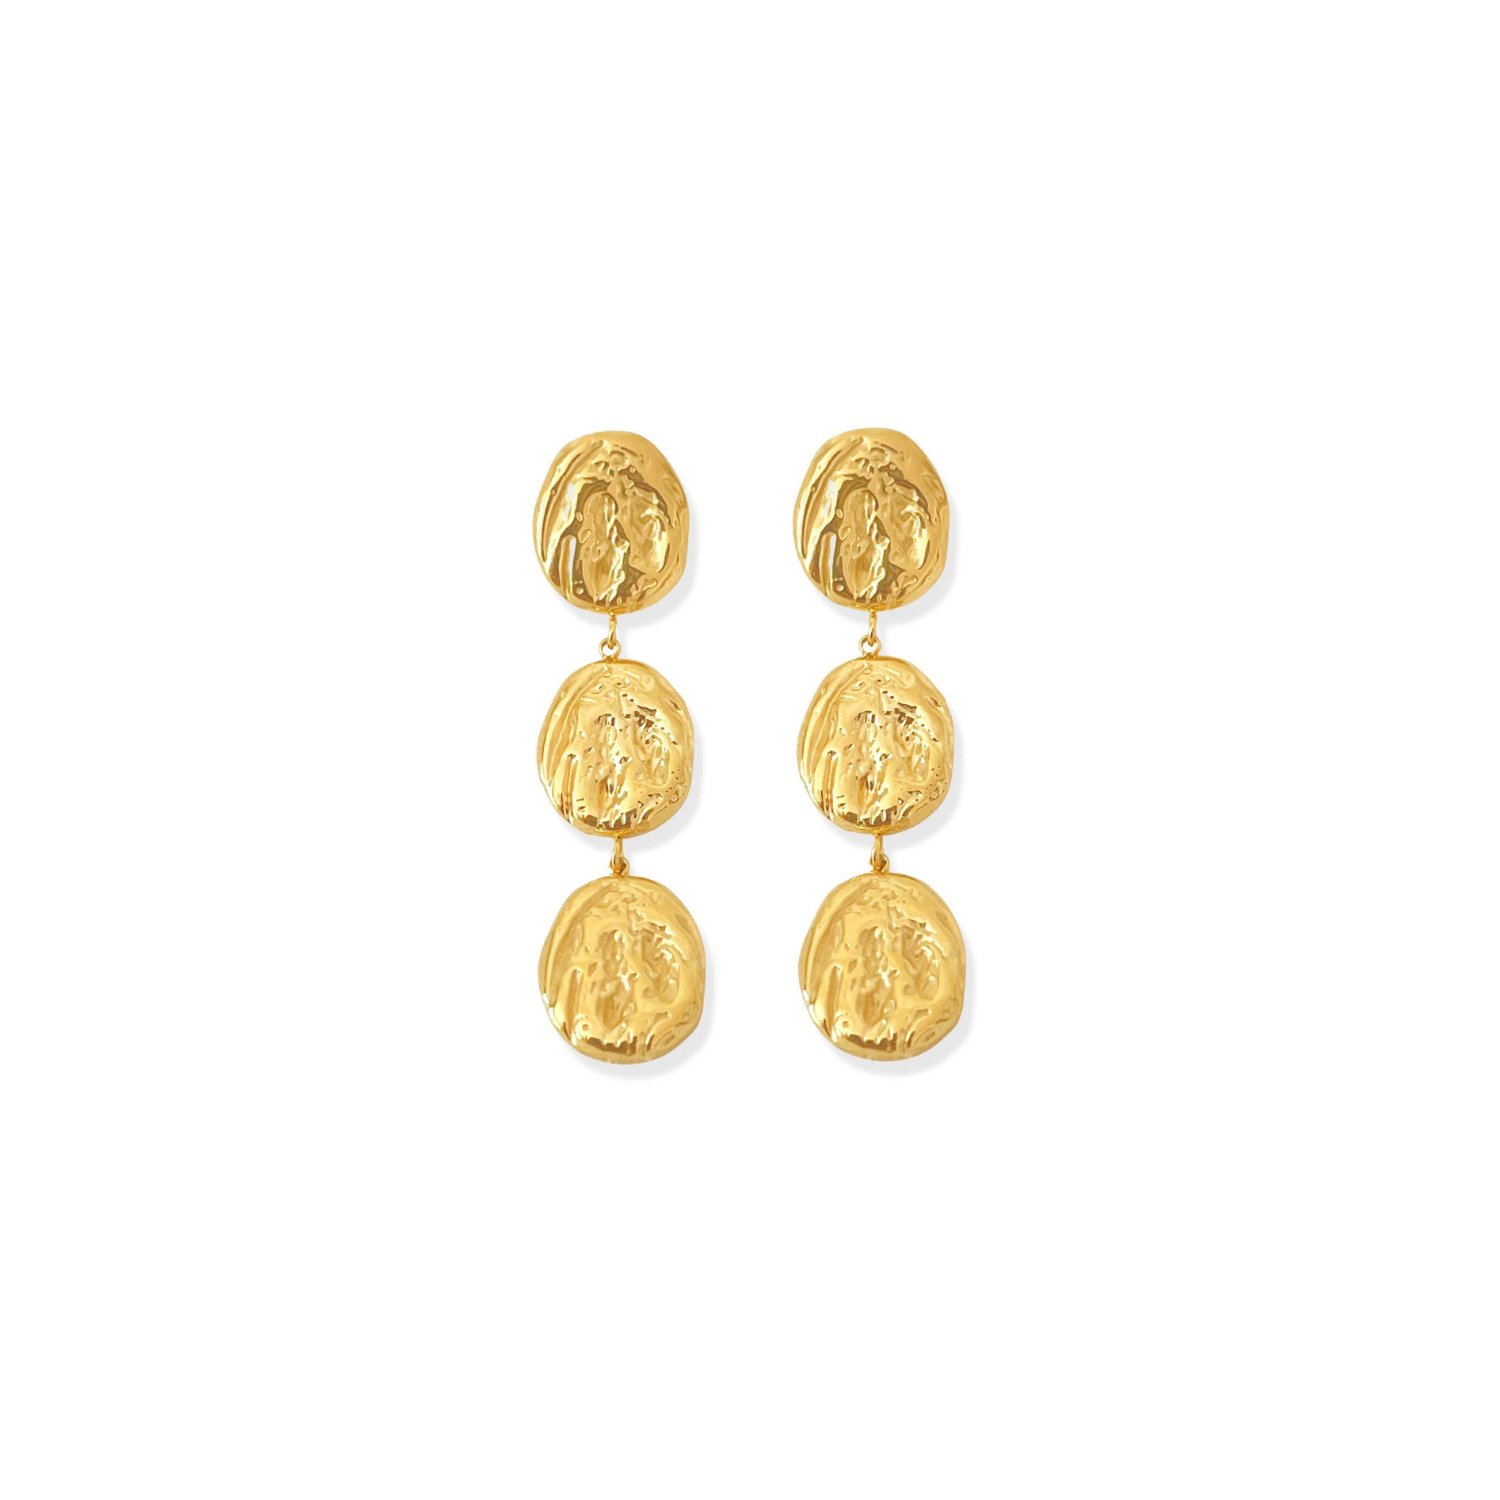 earrings, gold earrings, drop earrings, gift, textured earrings